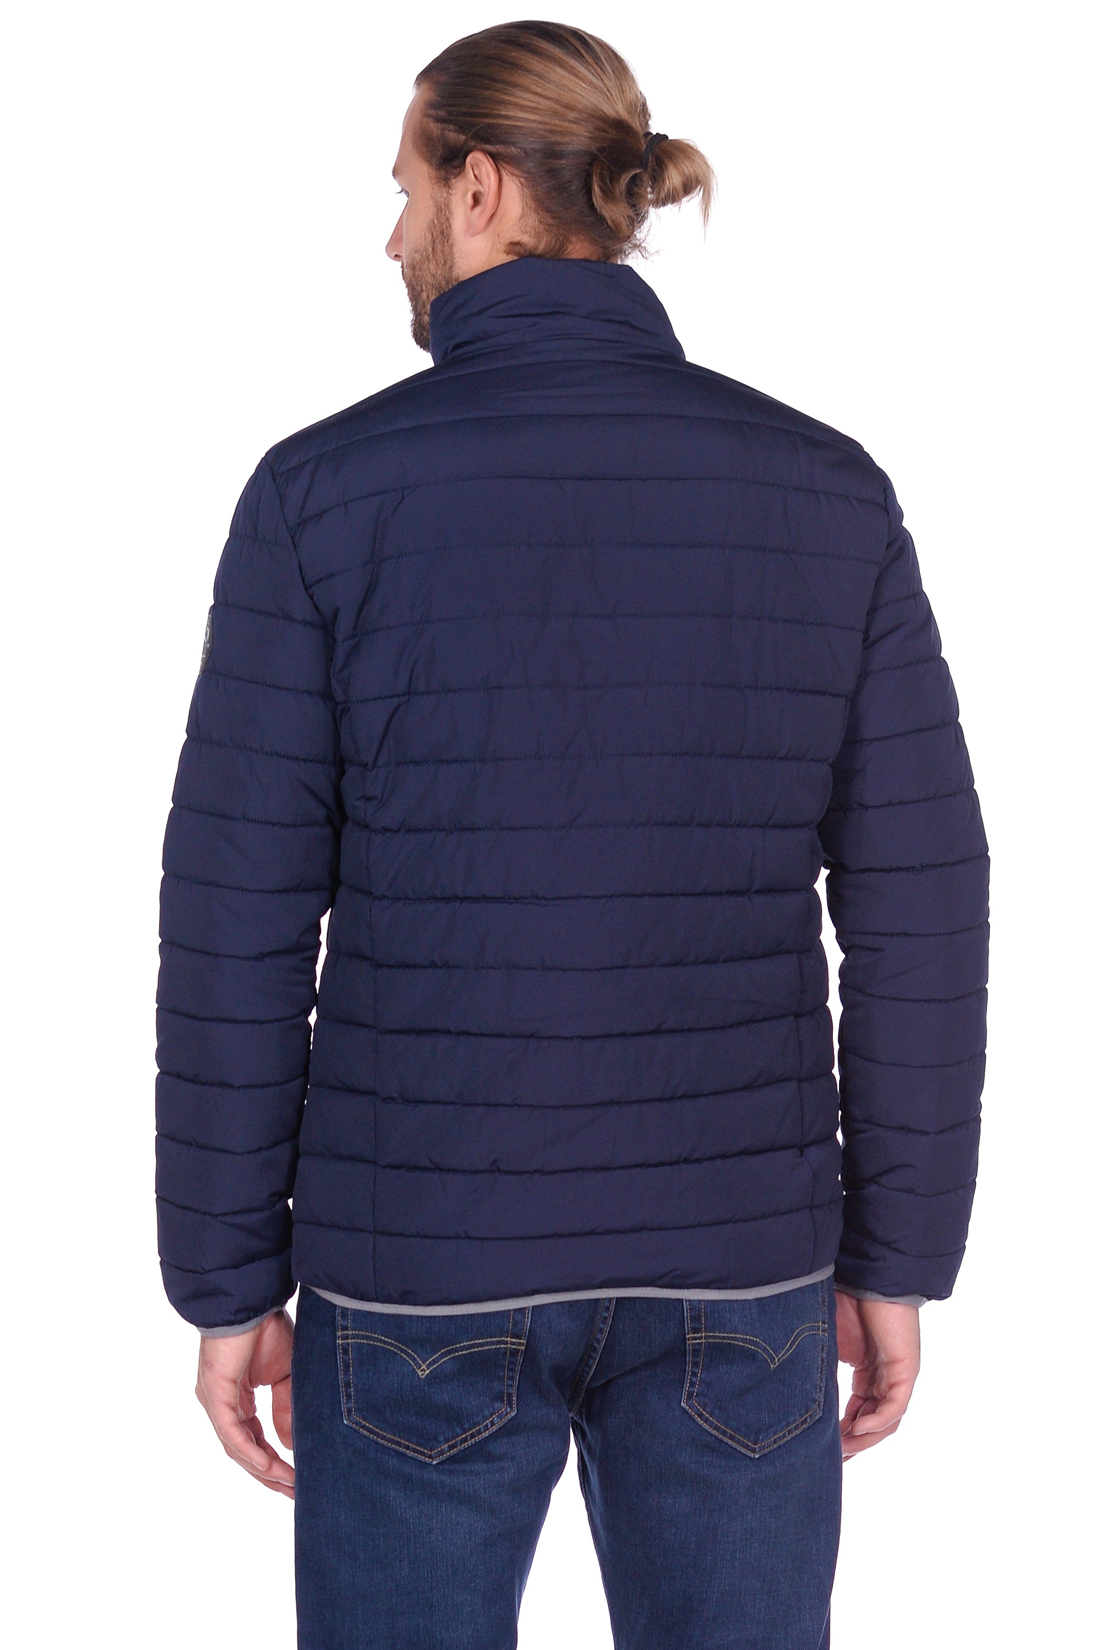 Лёгкая куртка с контрастной отделкой (арт. baon B539553), размер XXL, цвет синий Лёгкая куртка с контрастной отделкой (арт. baon B539553) - фото 2